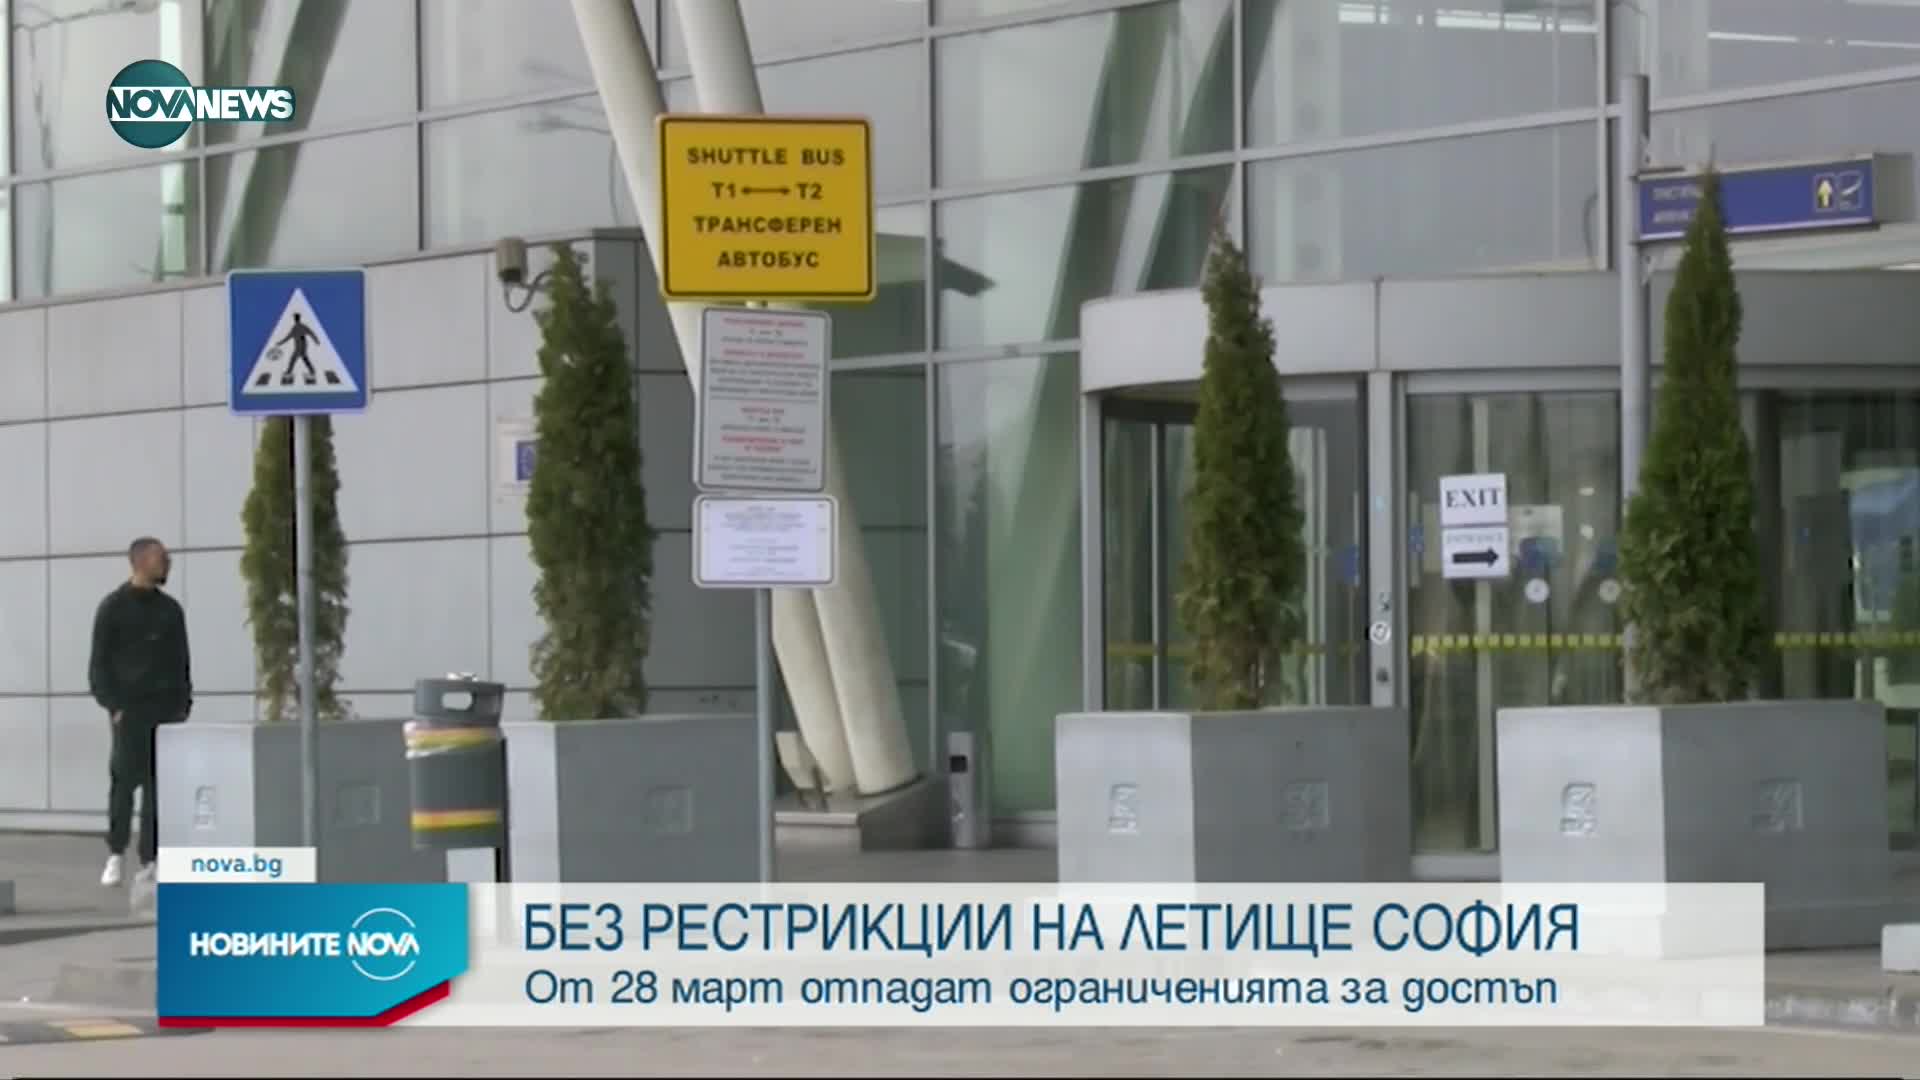 Отпадат ограничениета за достъп до терминалите на Летище София